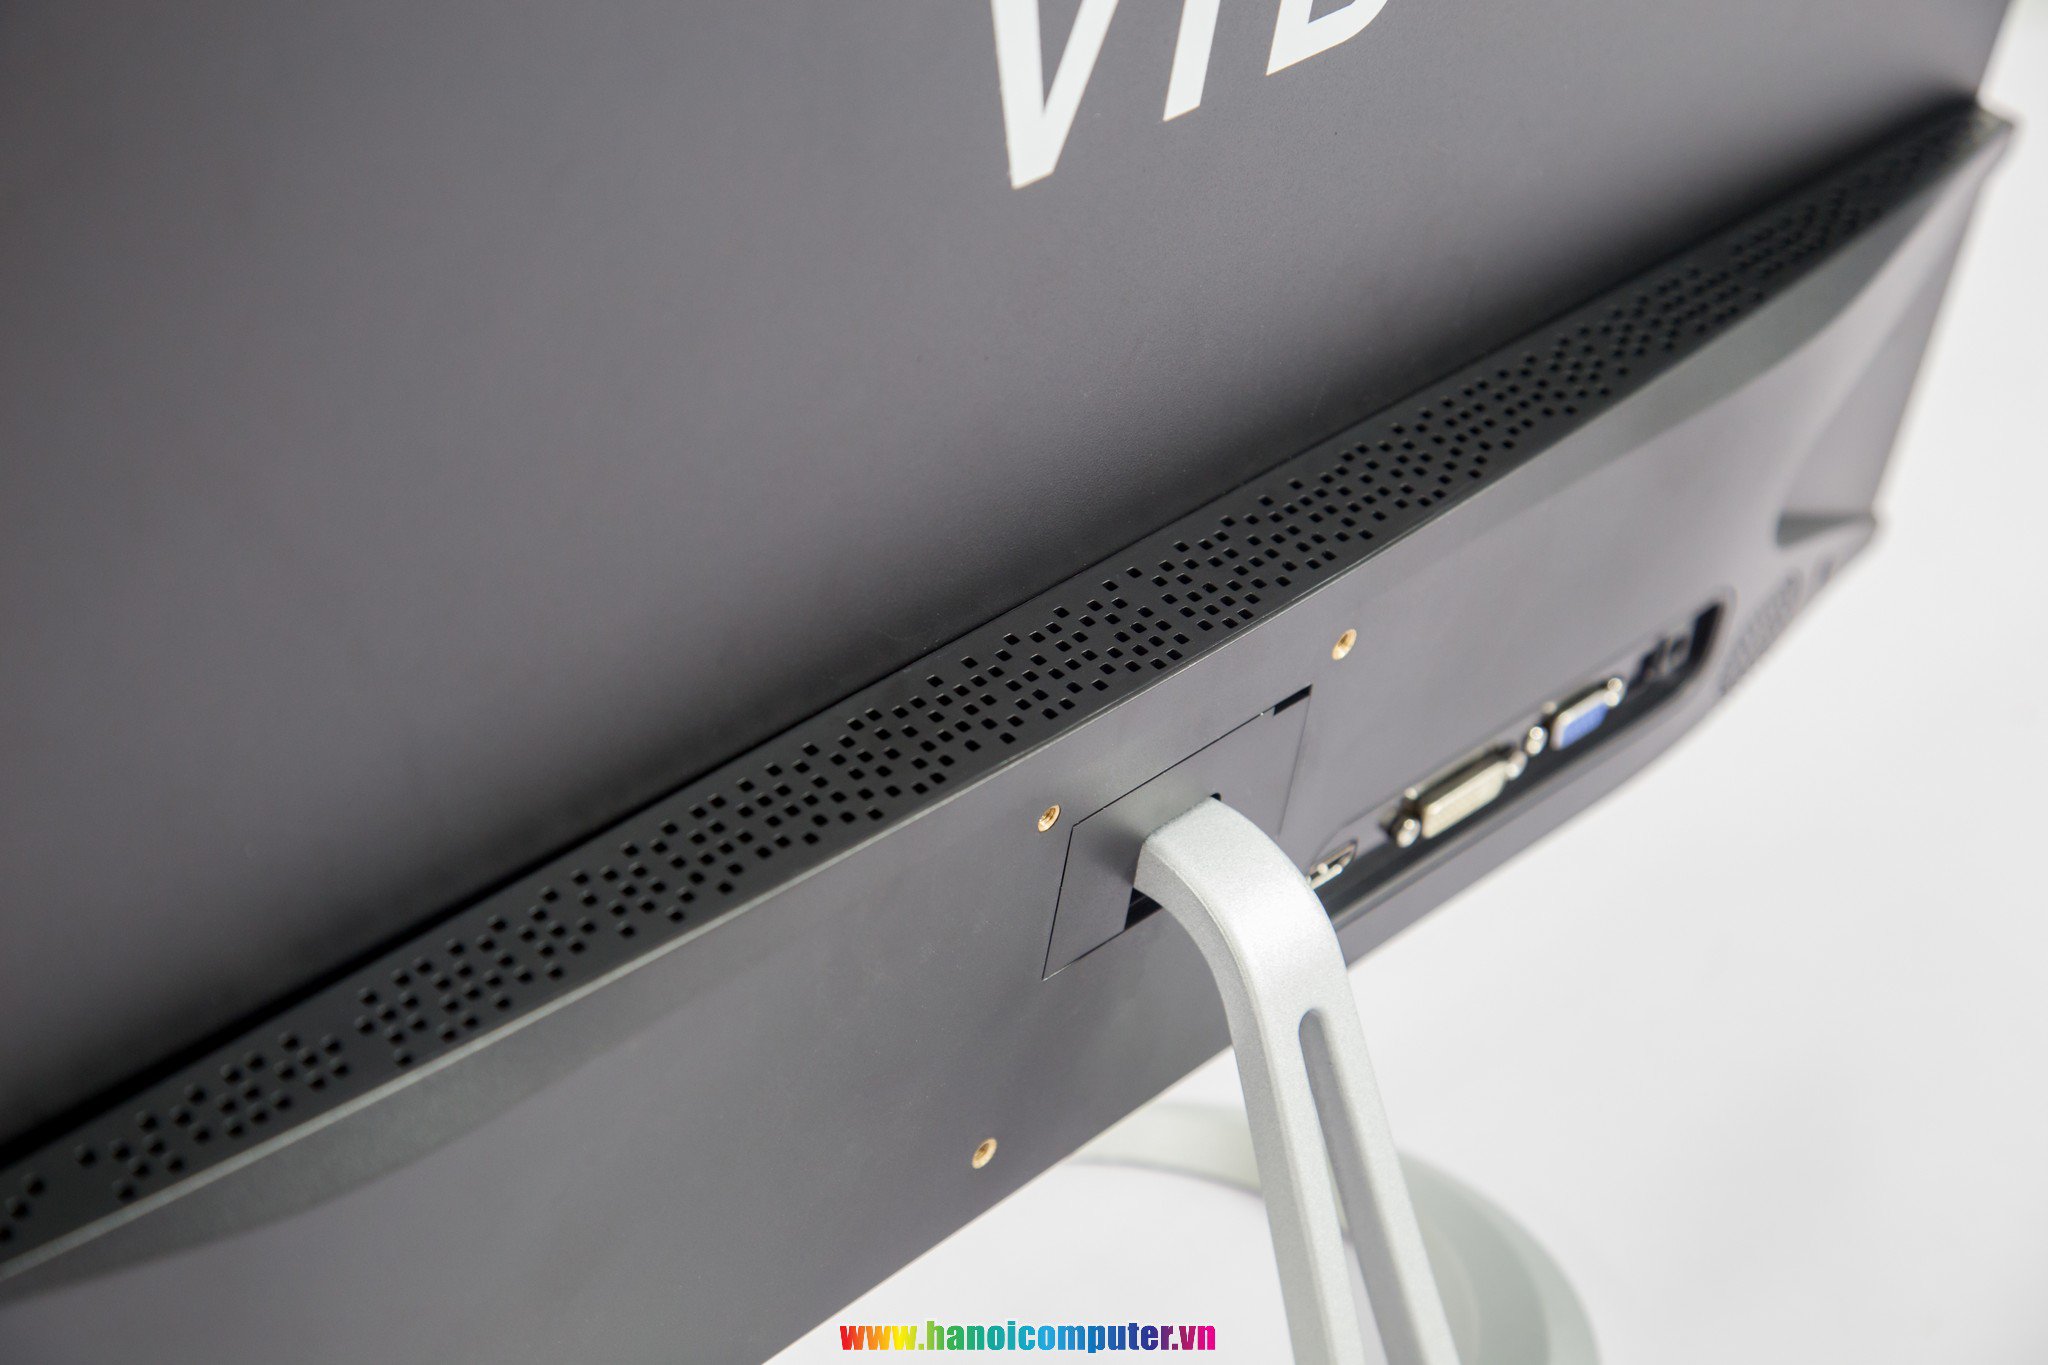 Màn hình 24 inches của VTB 10